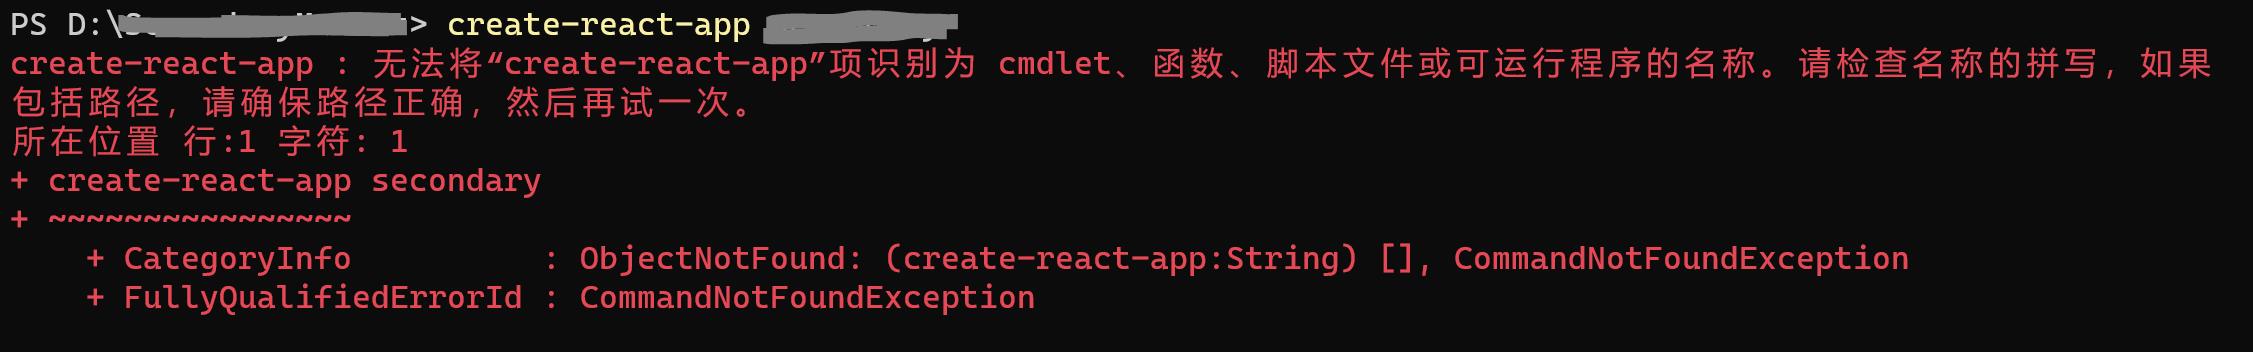 无法将“create-react-app”项识别为 cmdlet、函数、脚本文件或可运行程序的名称。 - 文章图片